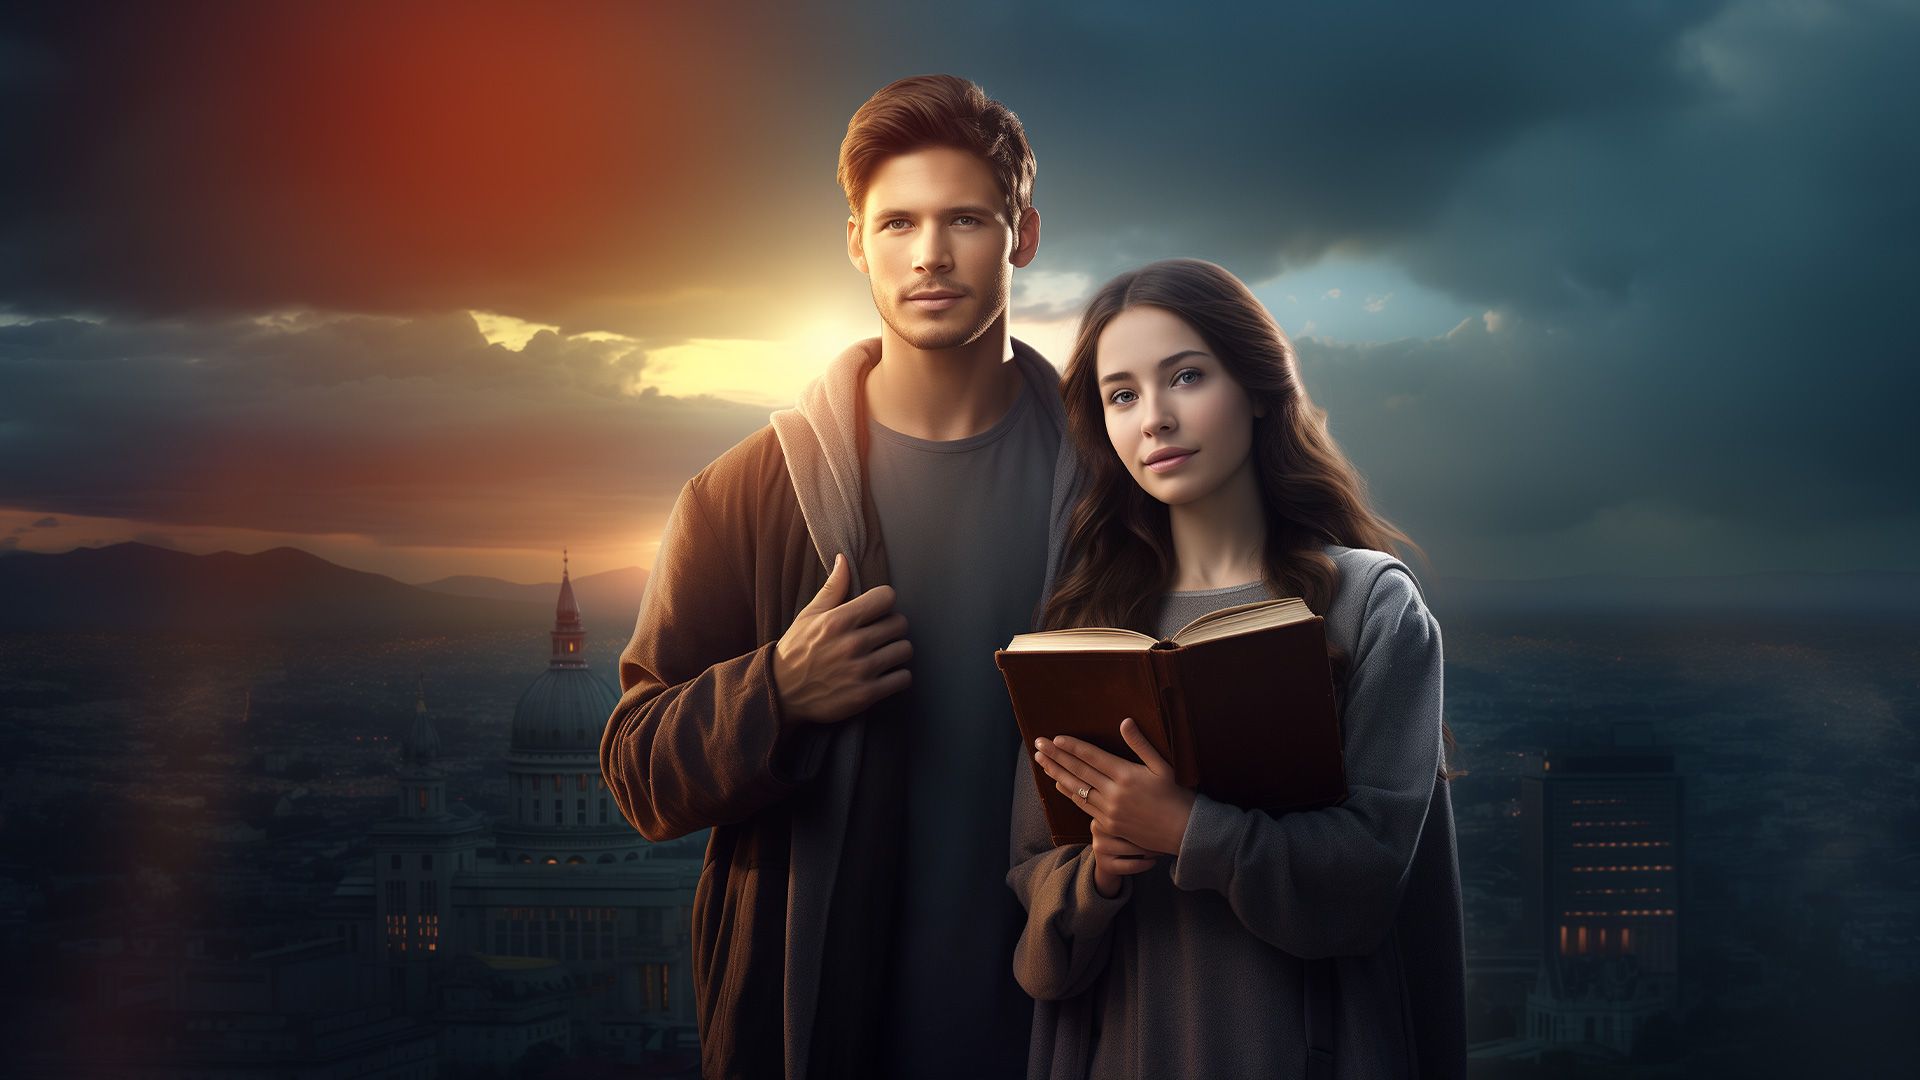 Promotional image for Чем евангелист отличается от других проповедников?